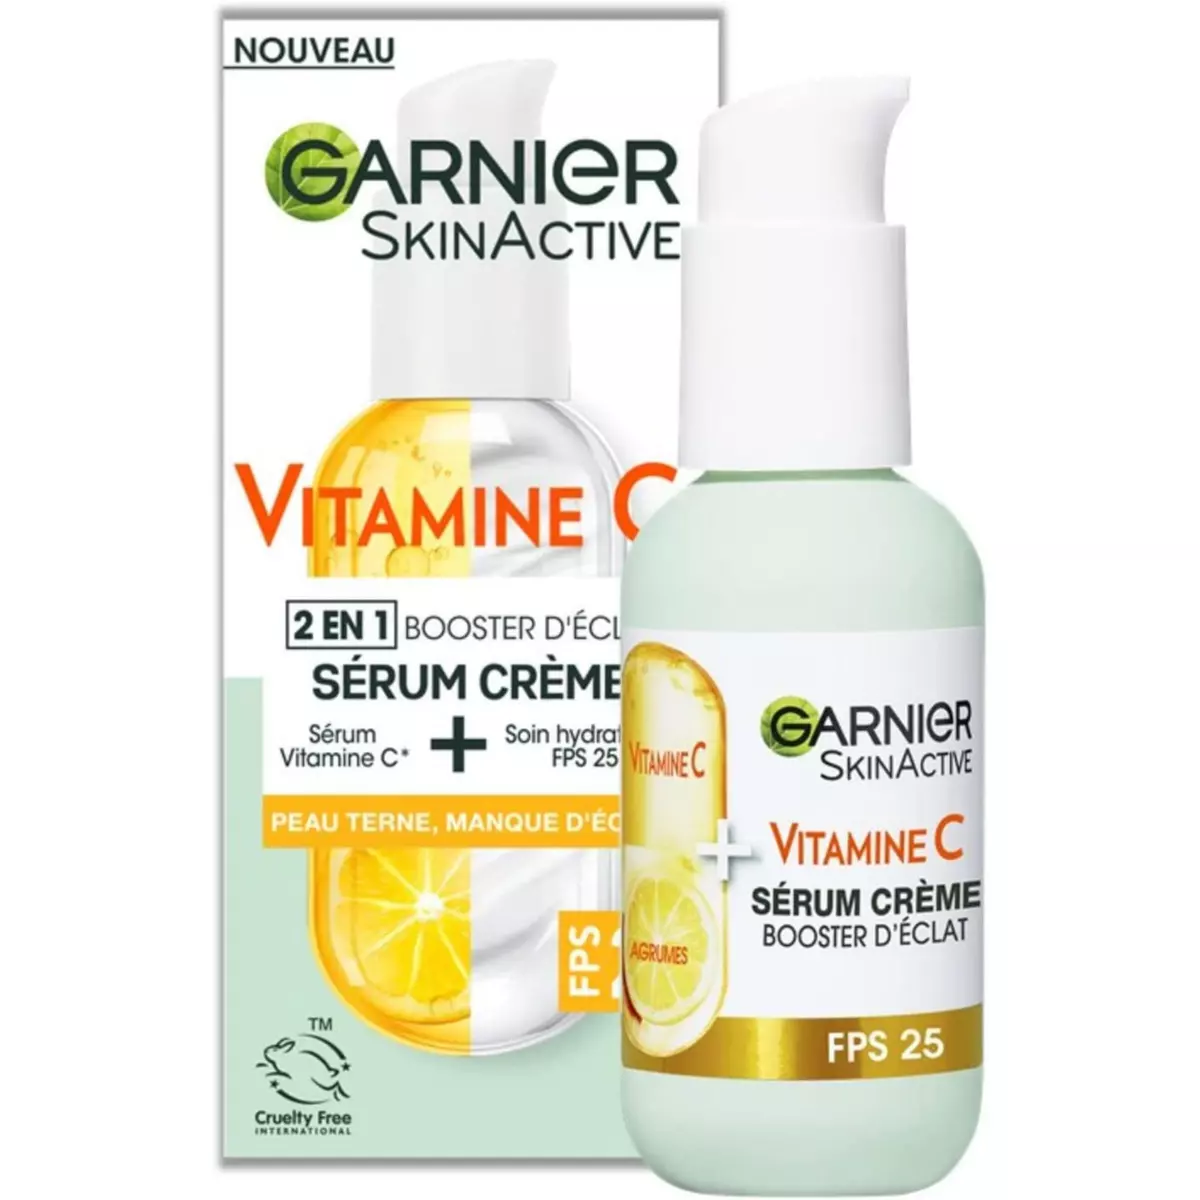 GARNIER Skin Active Sérum Crème booster s'éclat 2en1 50ml